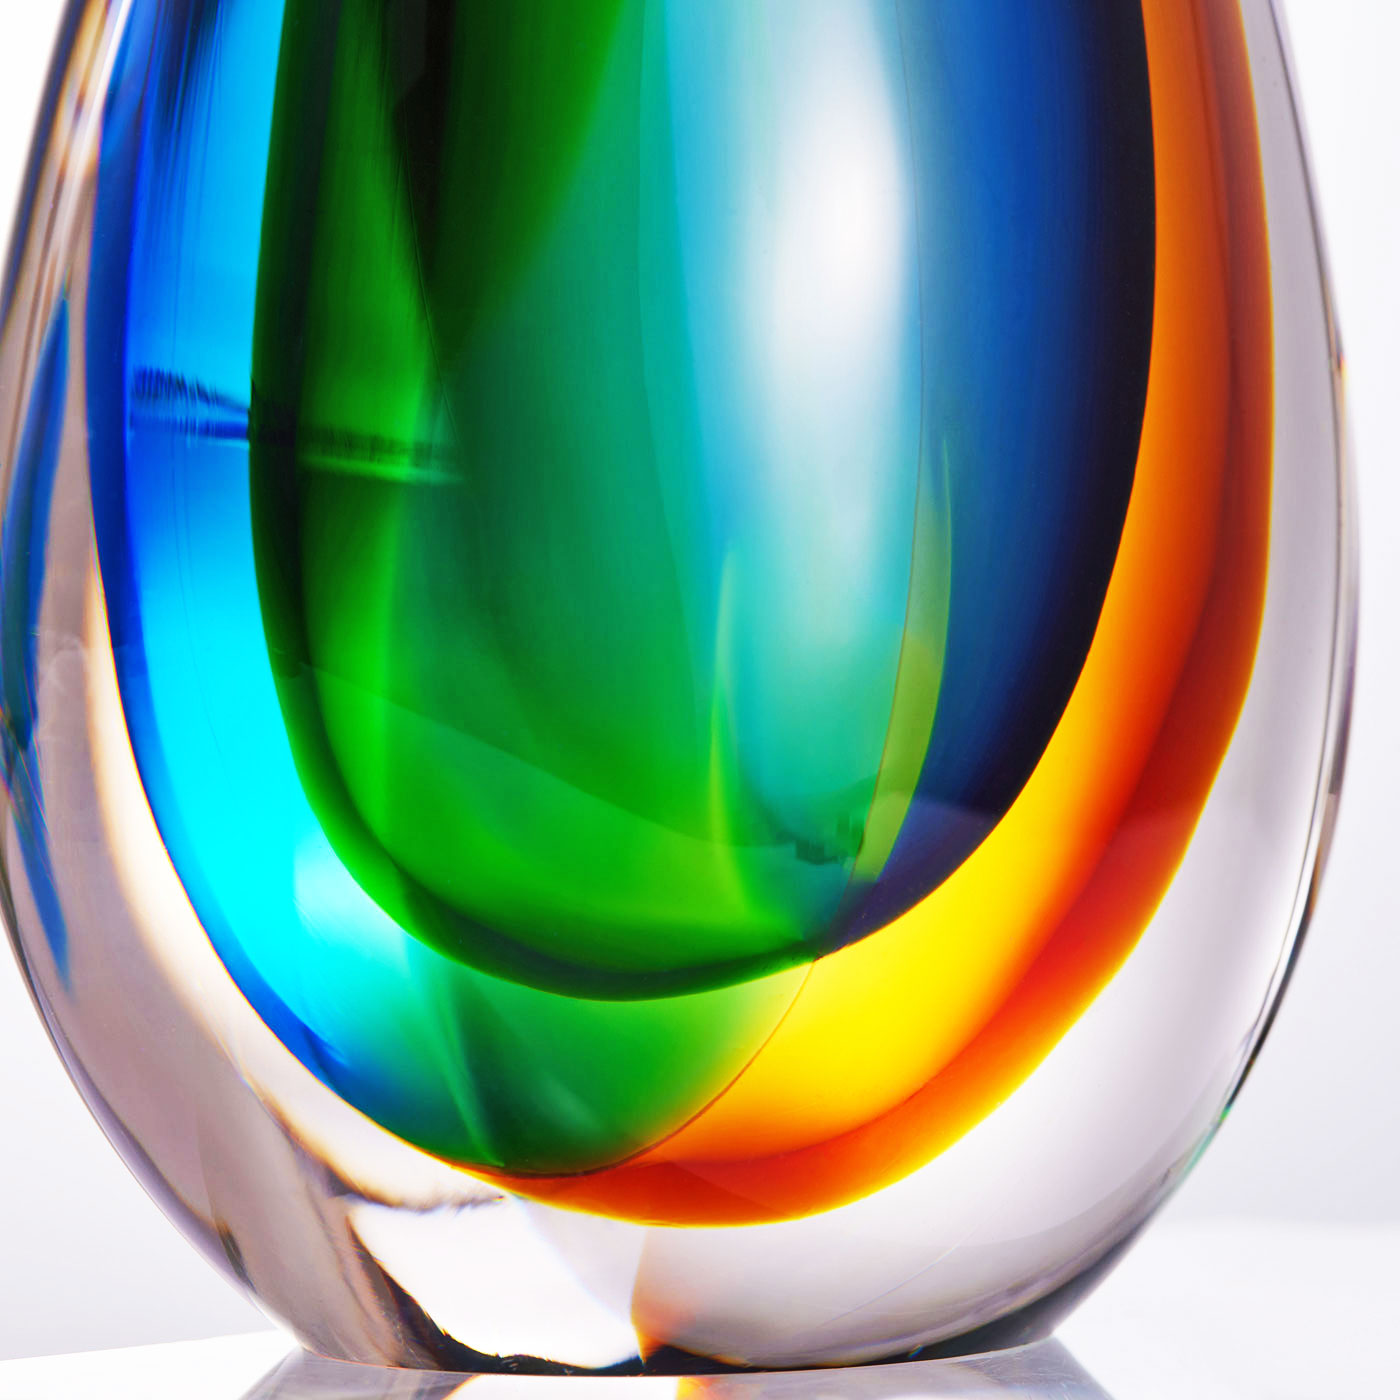 Hand Blown Teardrop Sommerso Art Glass Sculpture 7.5-10 inch tall